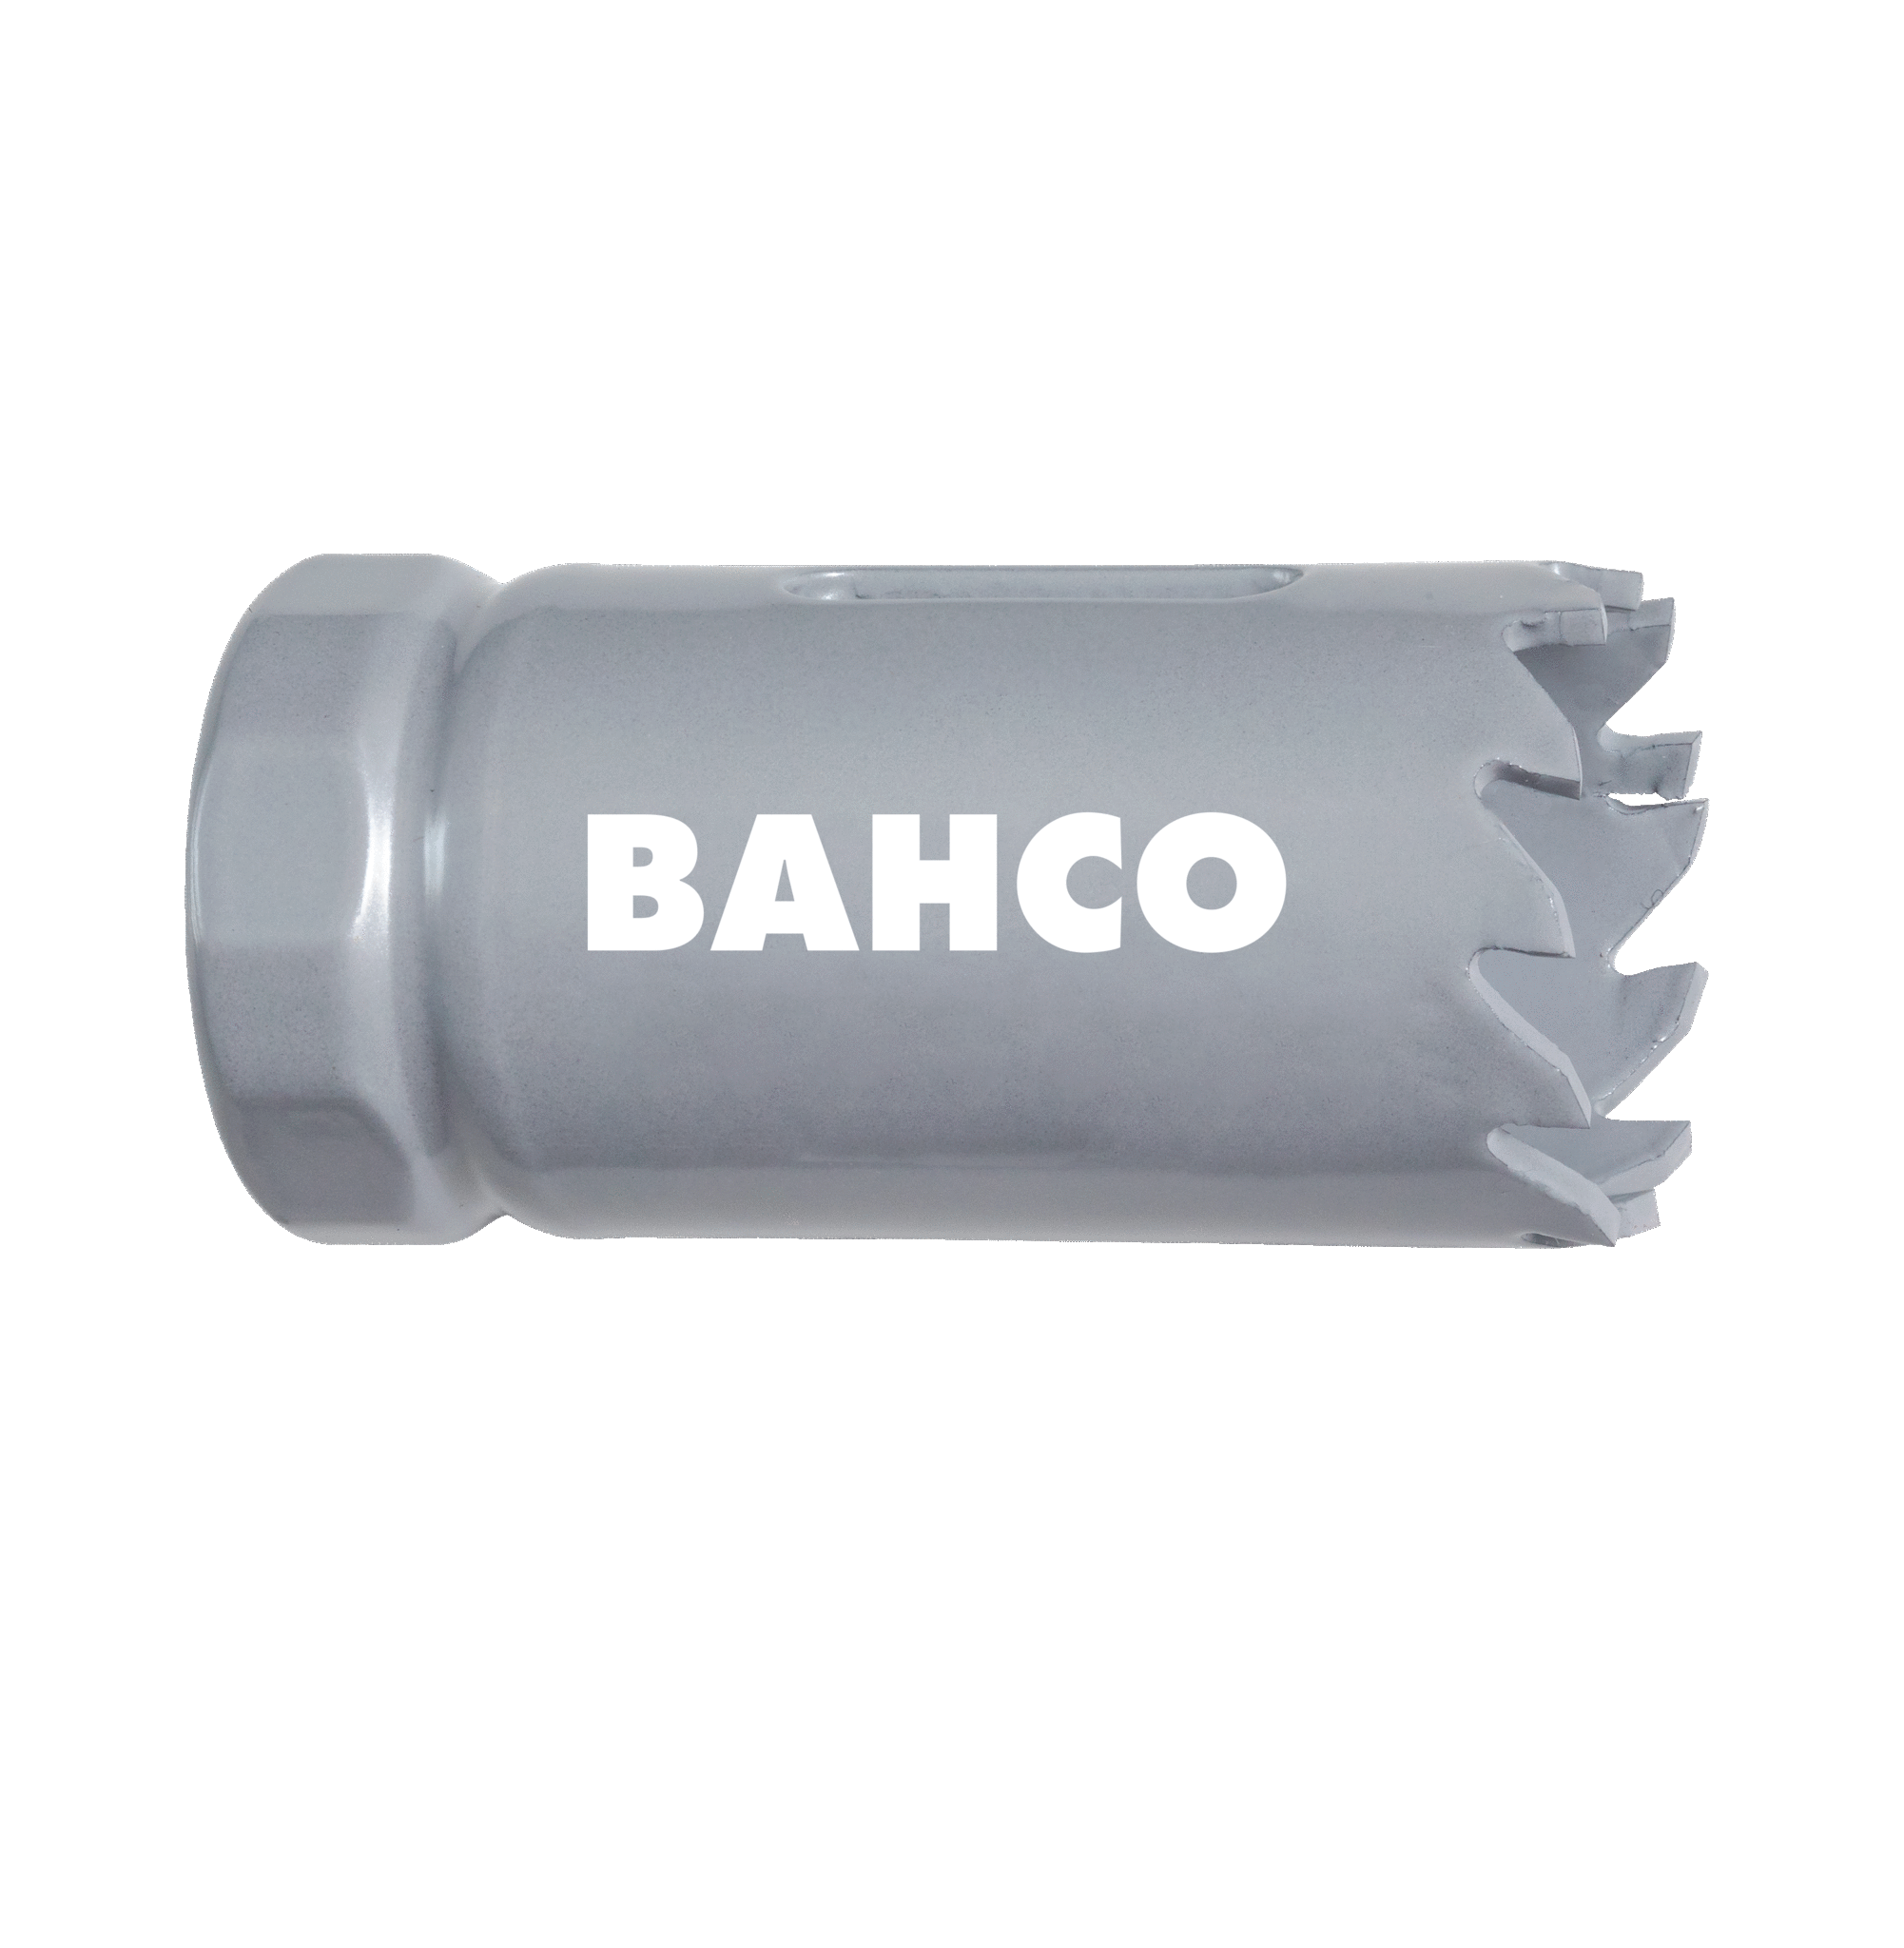 Кольцевые пилы с твердосплавными напайками BAHCO 3832-52